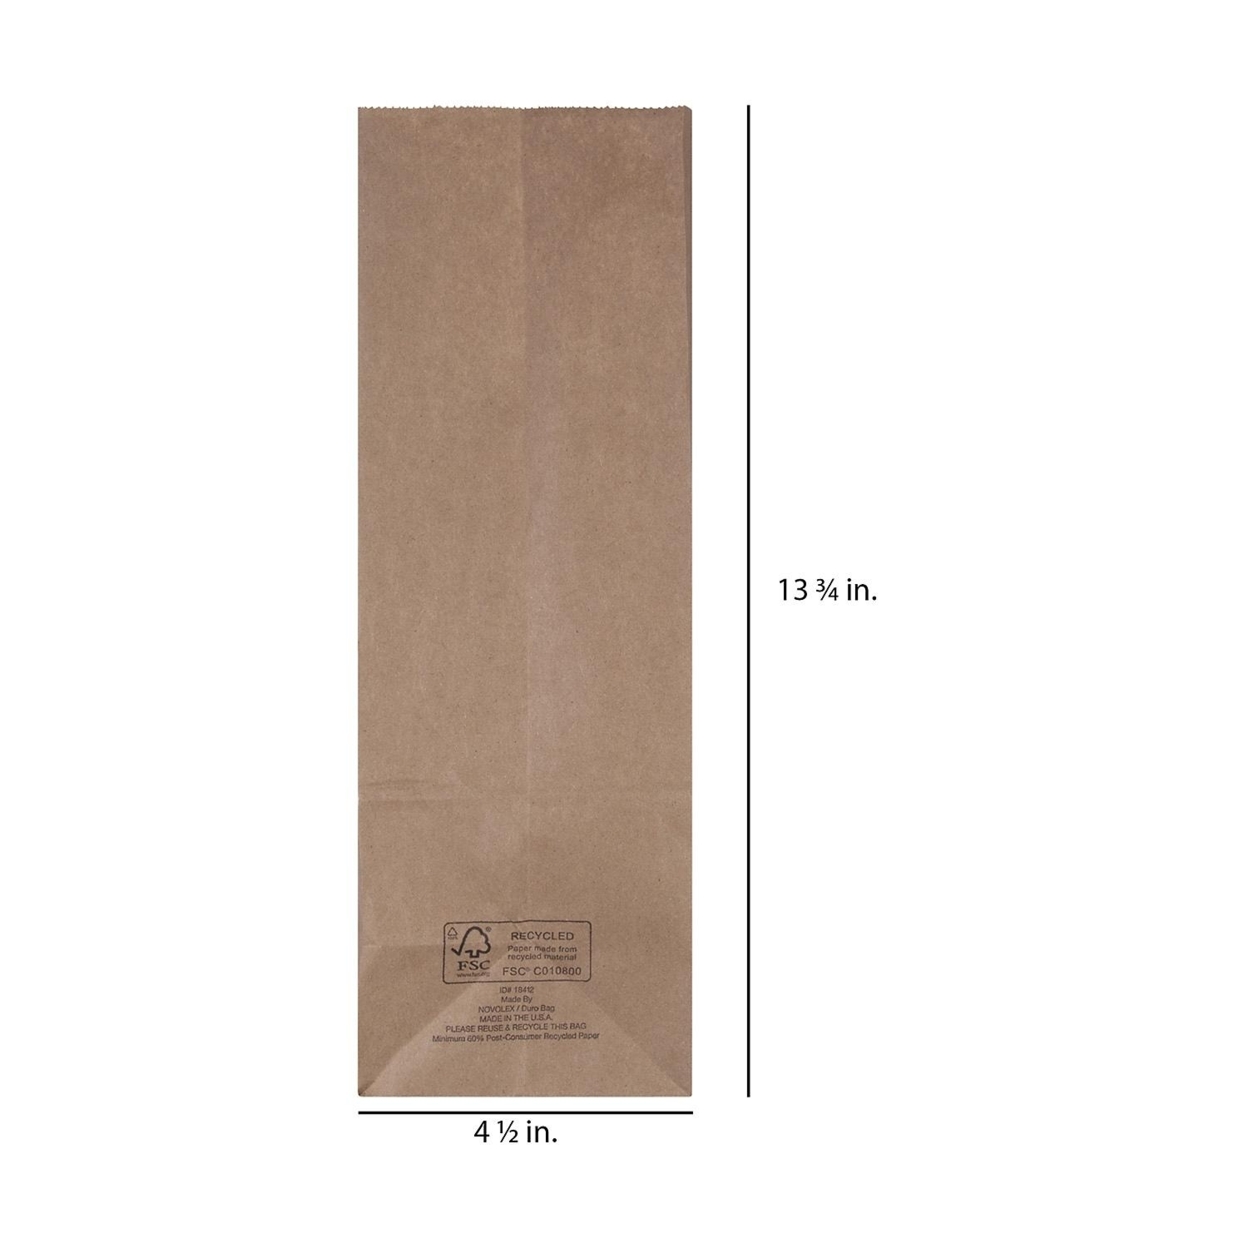 Duro Bag 12# Kraft Bags - 500 Count